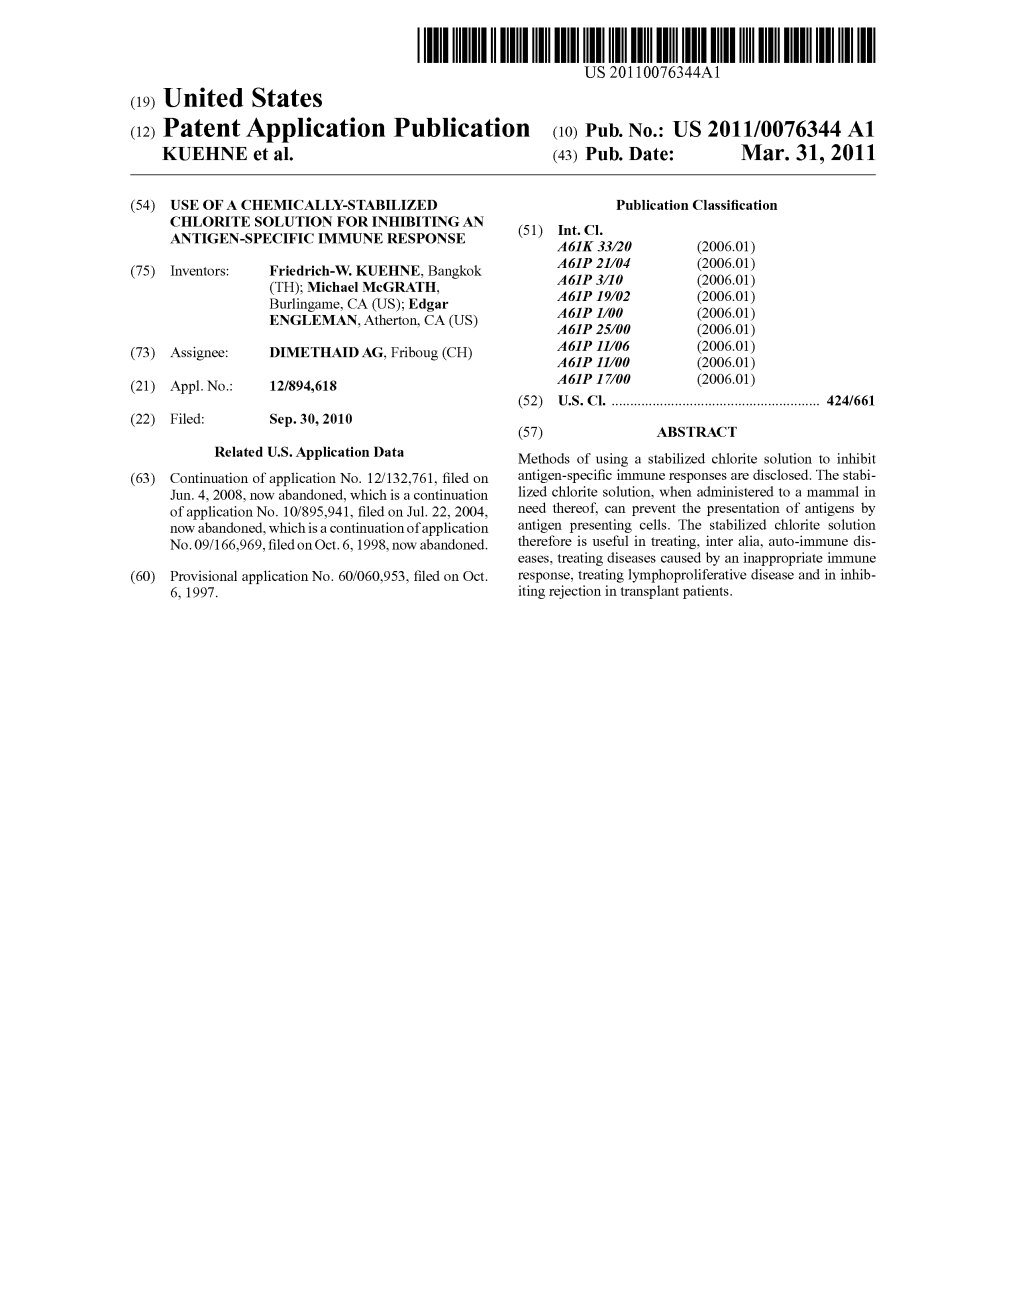 (12) Patent Application Publication (10) Pub. No.: US 2011/0076344 A1 KUEHINE Et Al